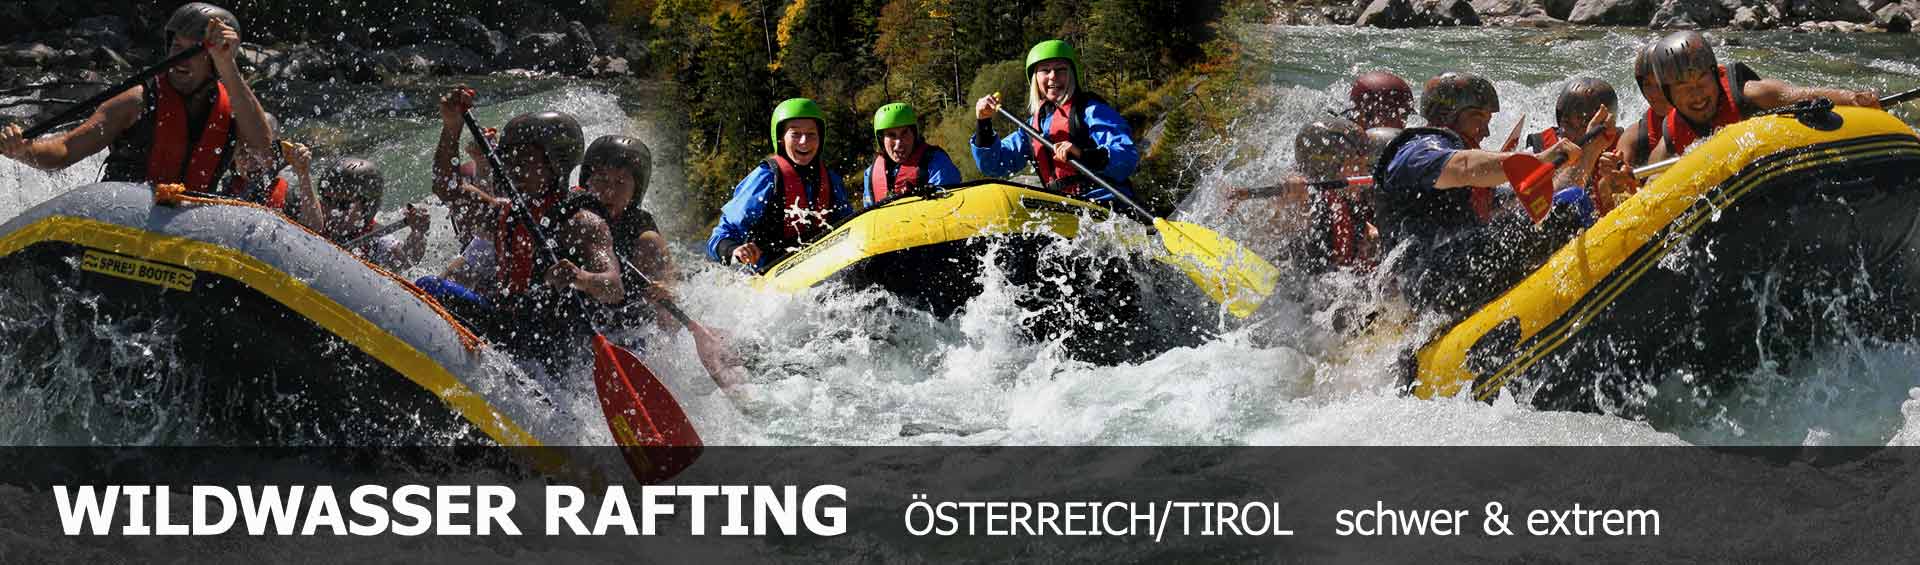 Wildwasser Rafting Tirol, schwere Raftingtouren im Ötztal in Österreich